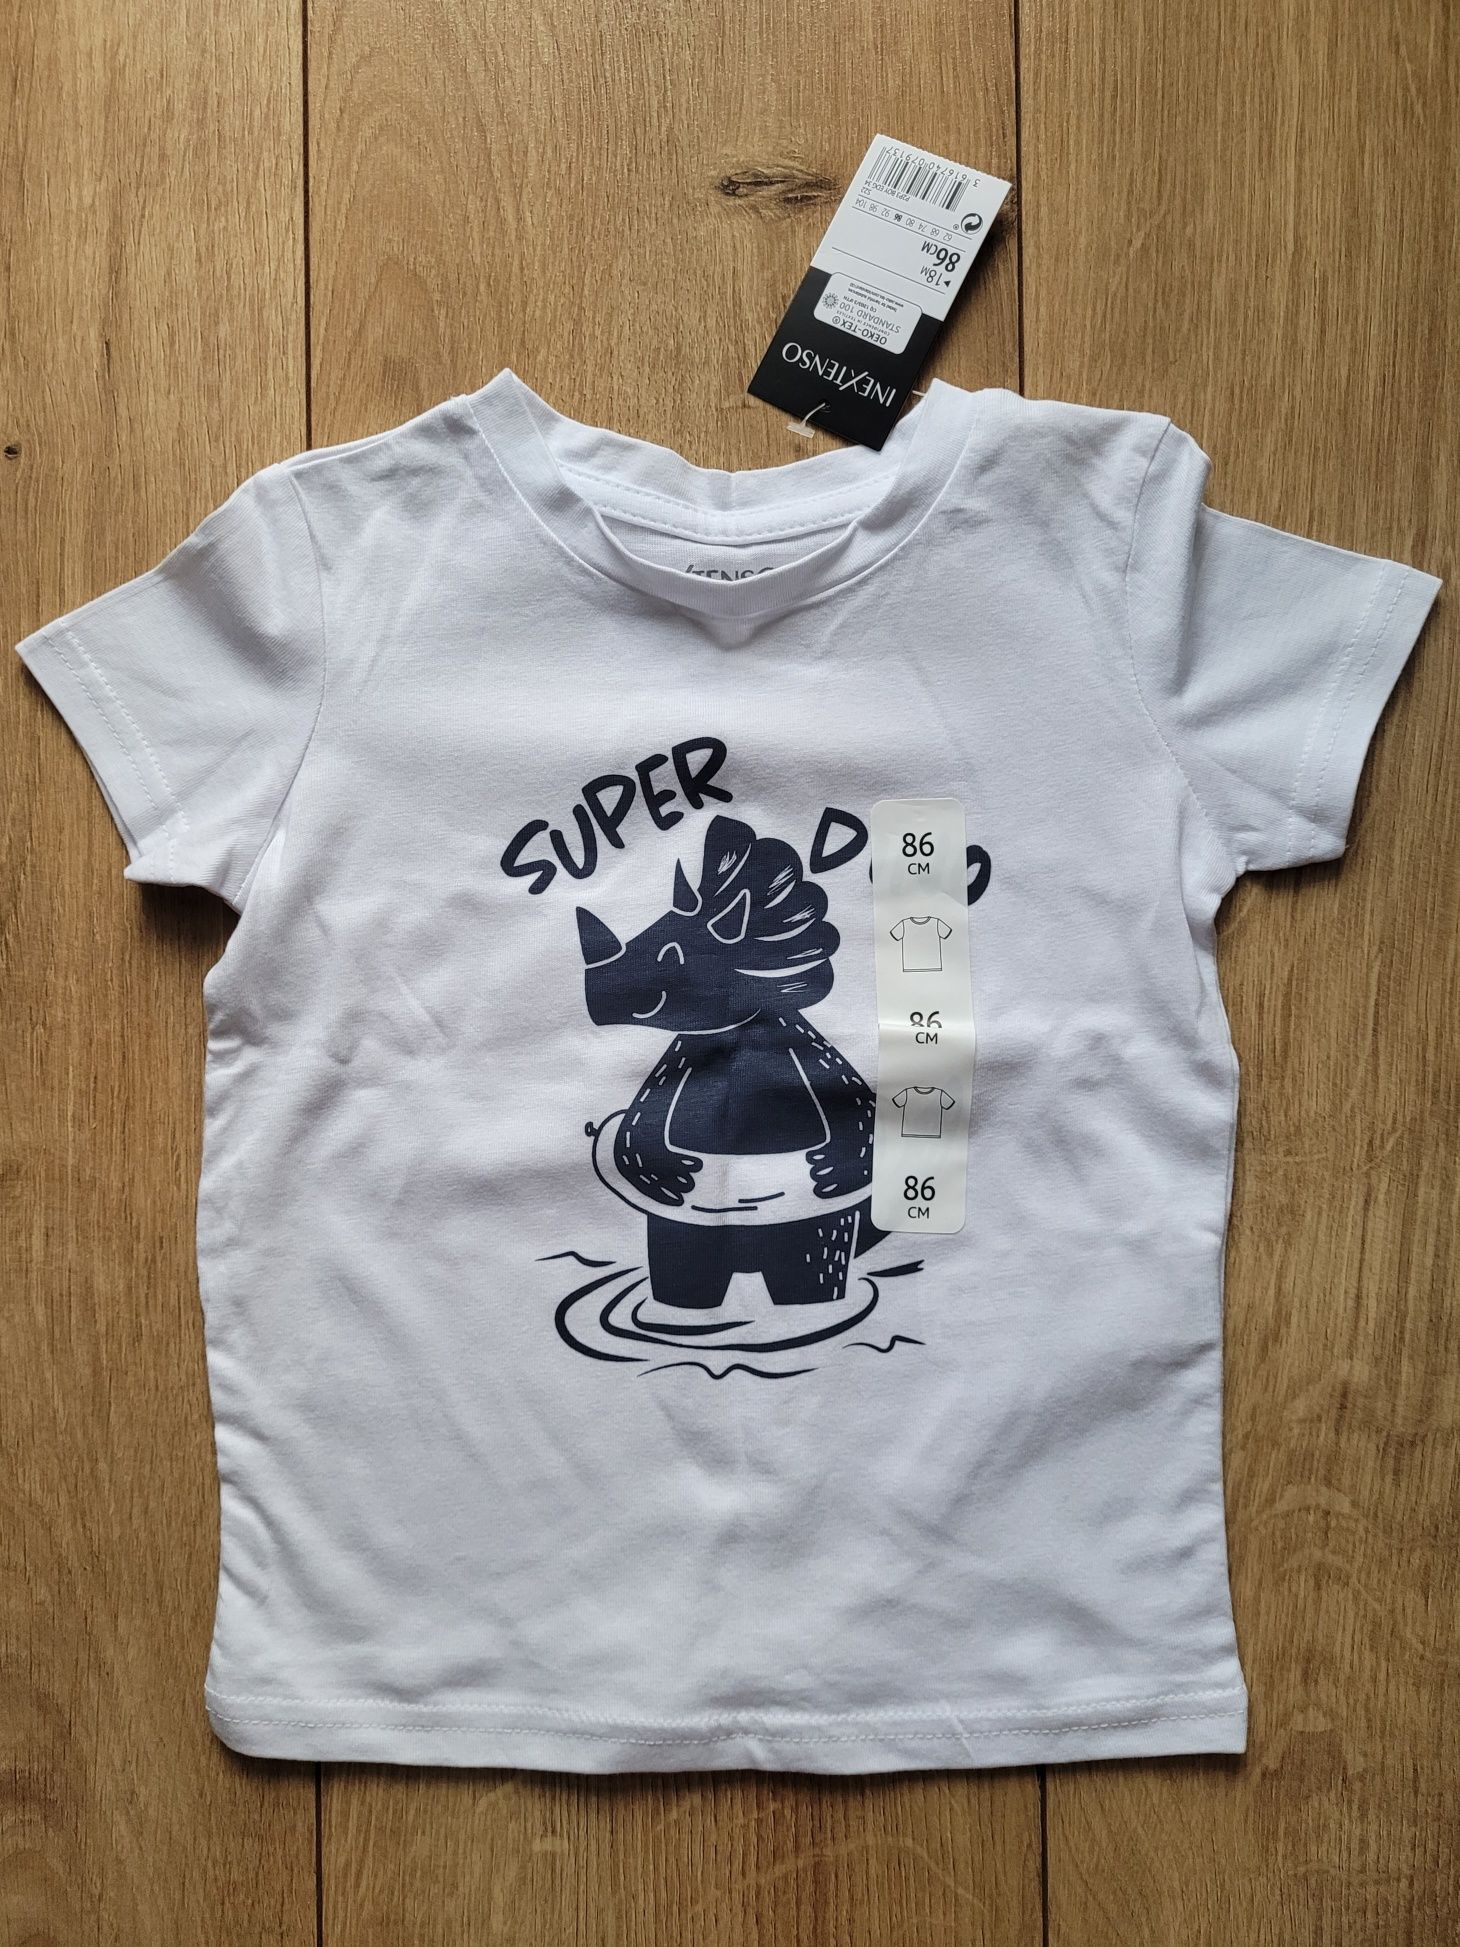 Bluzka / T-shirt Super Dino Inextenso